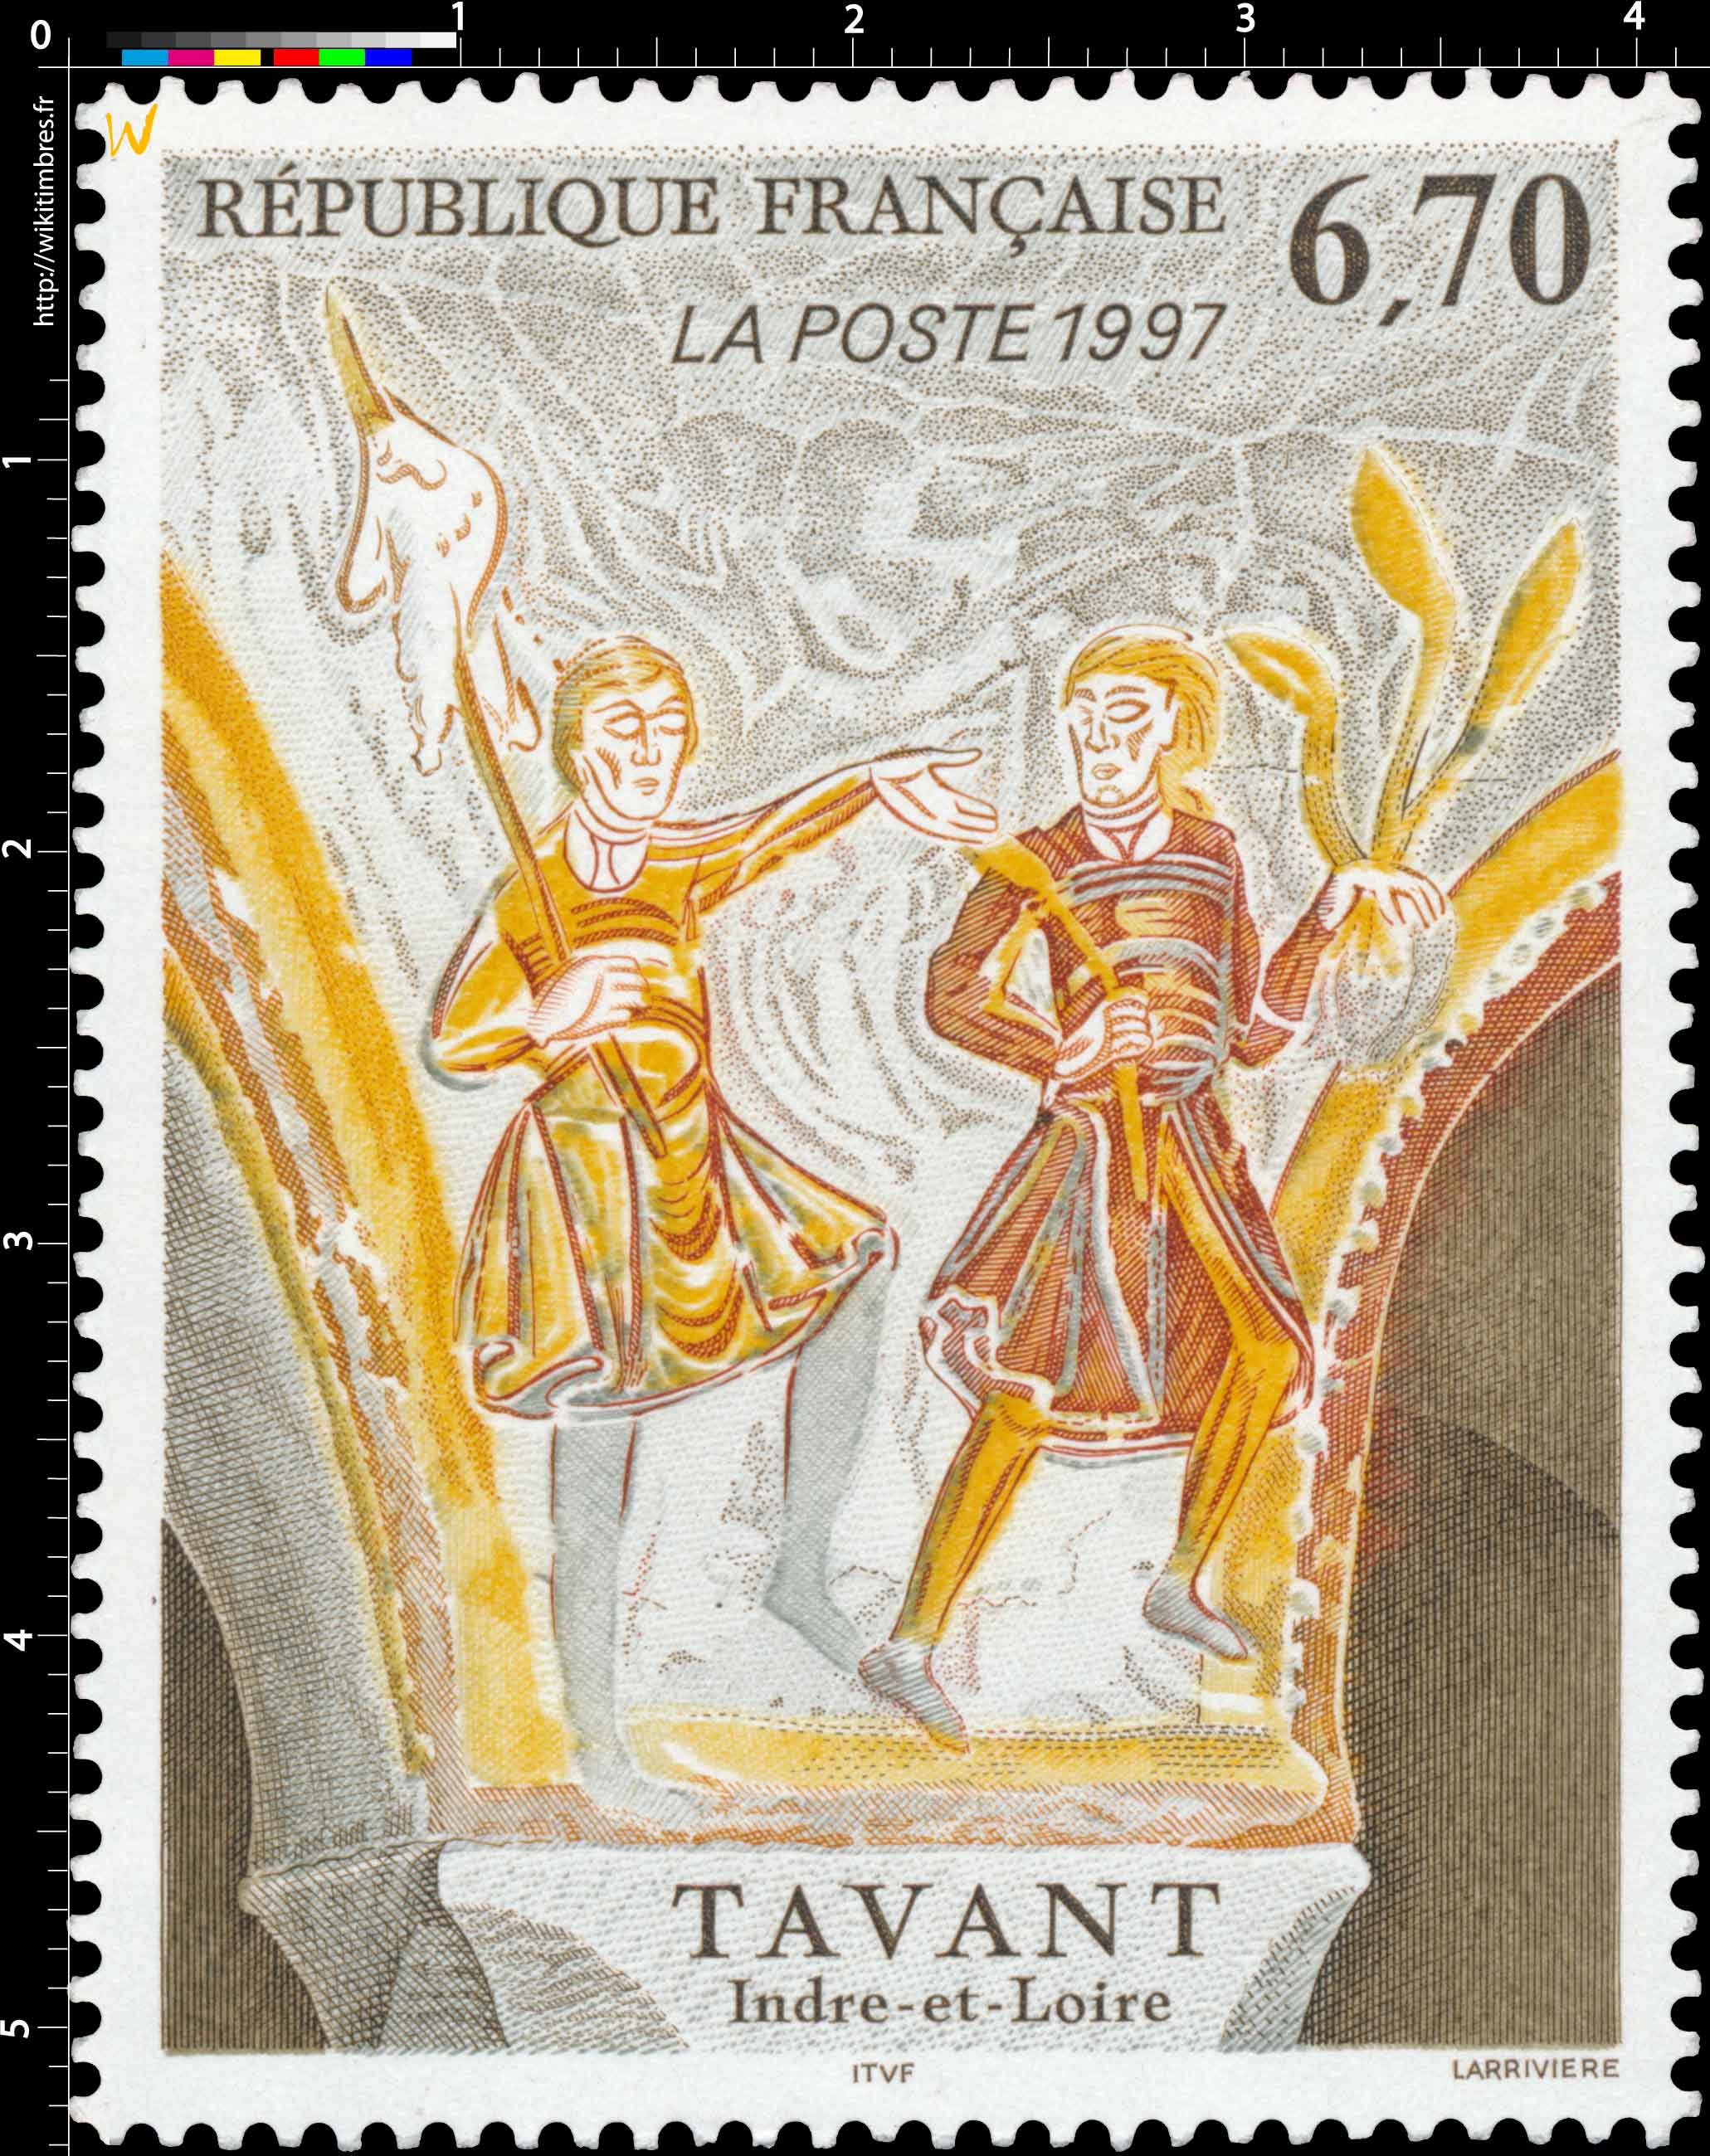 1997 TAVANT Indre-et-Loire